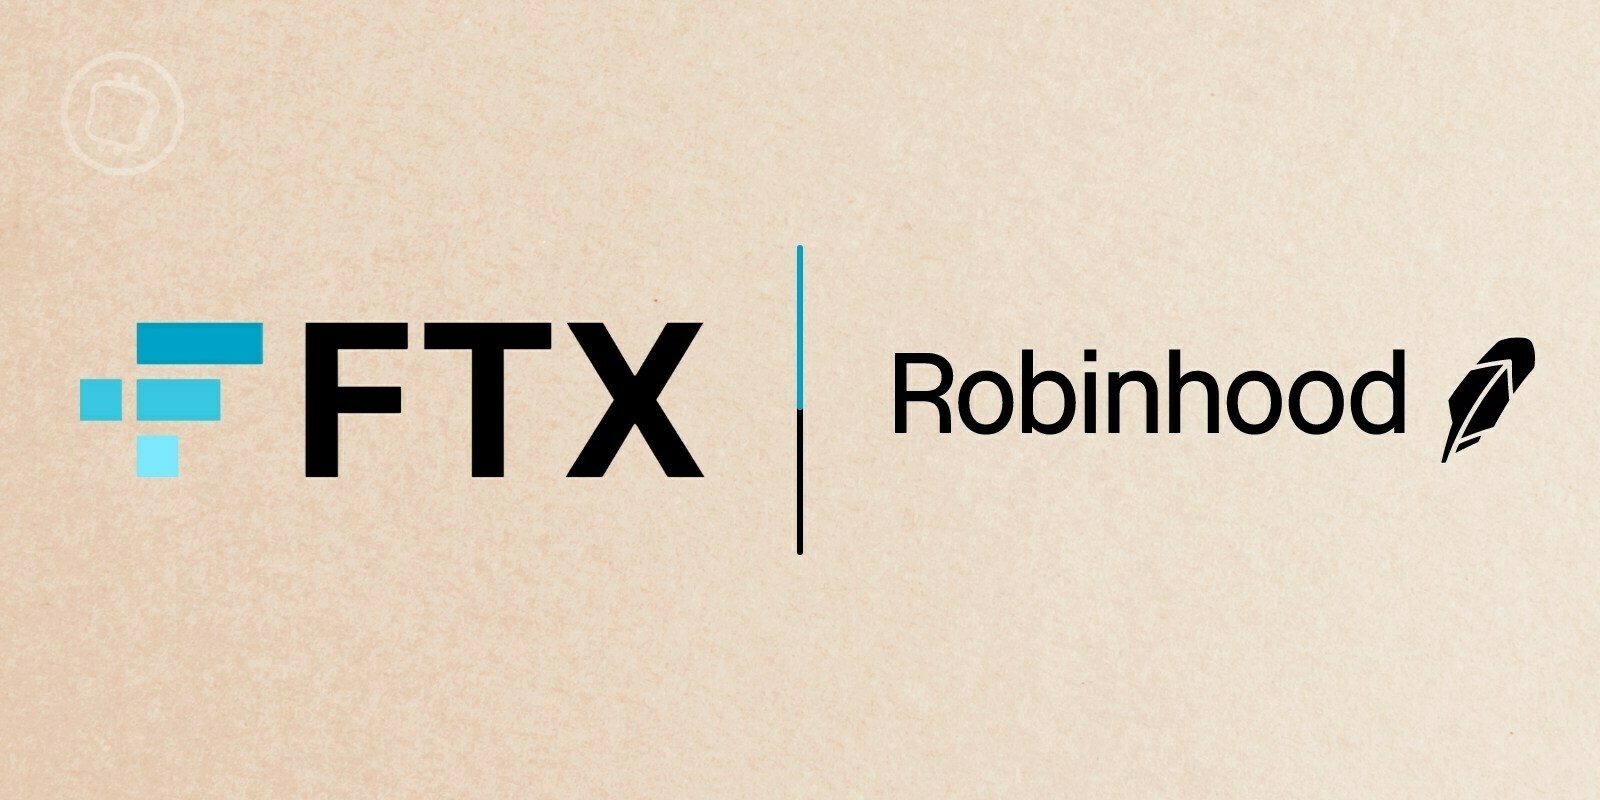 La plateforme FTX prévoit-elle vraiment d'acquérir Robinhood ?